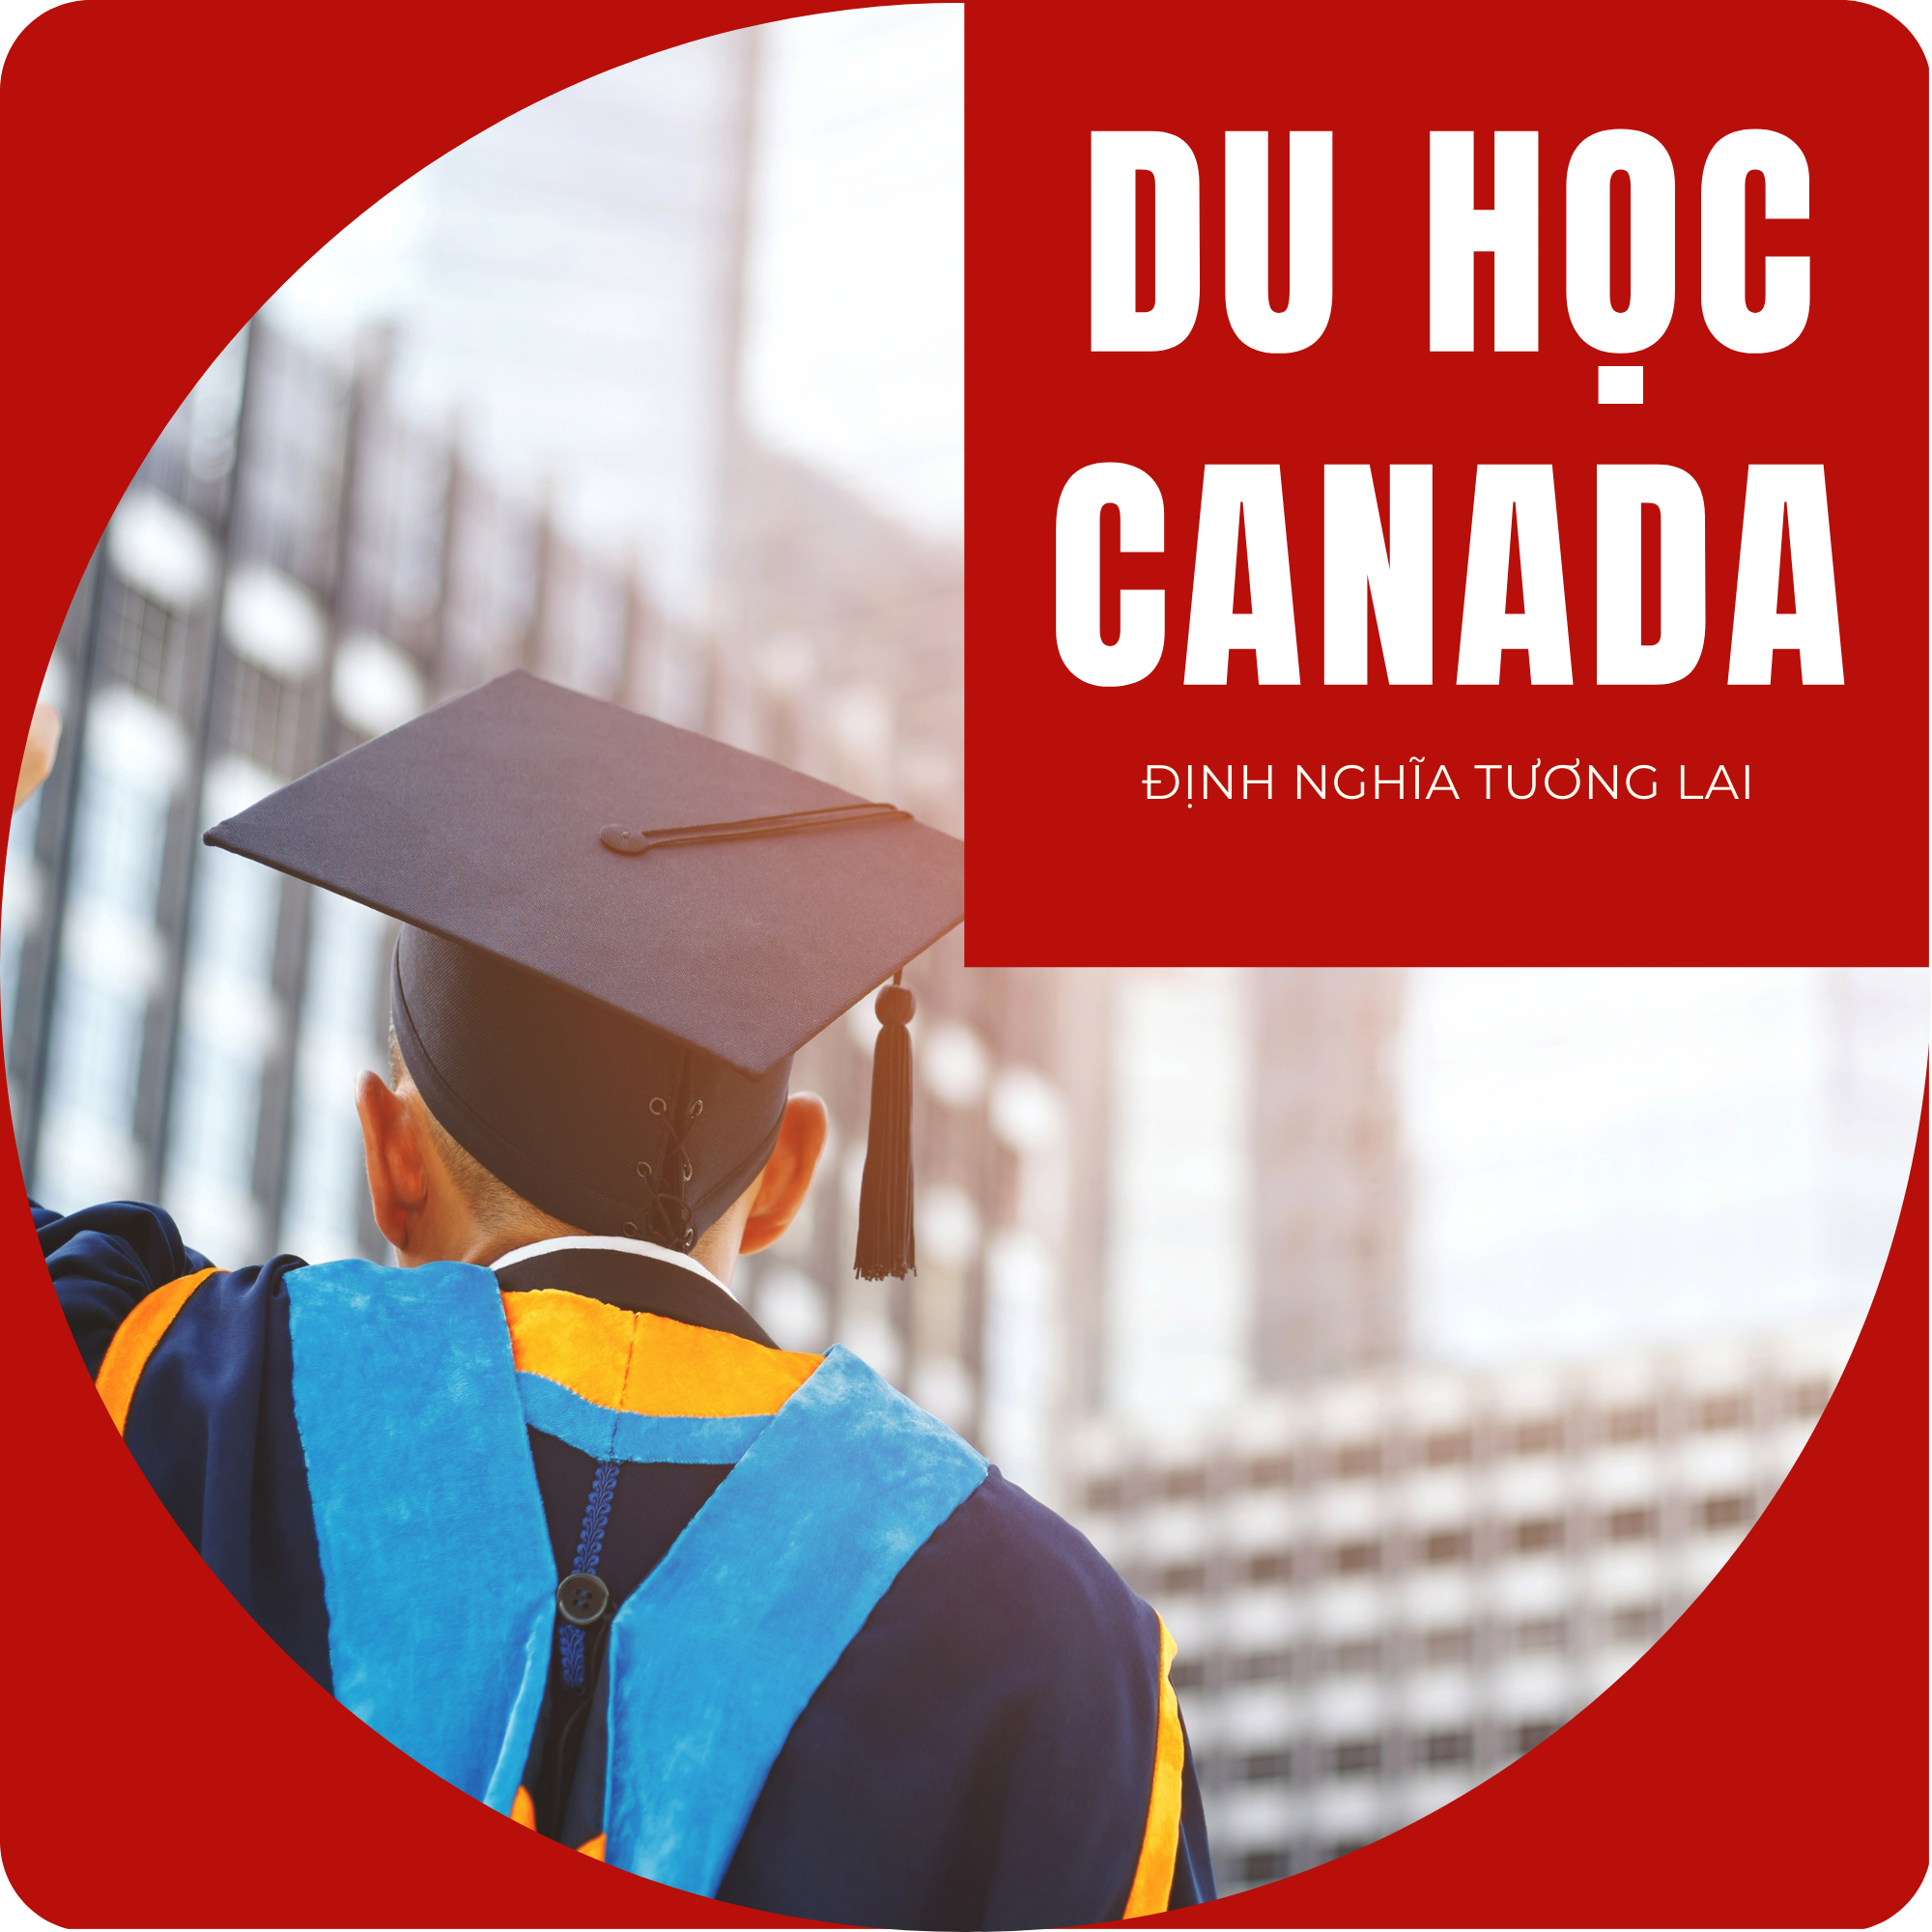 Trang tin tức du học Canada tạo bởi Oces Group.